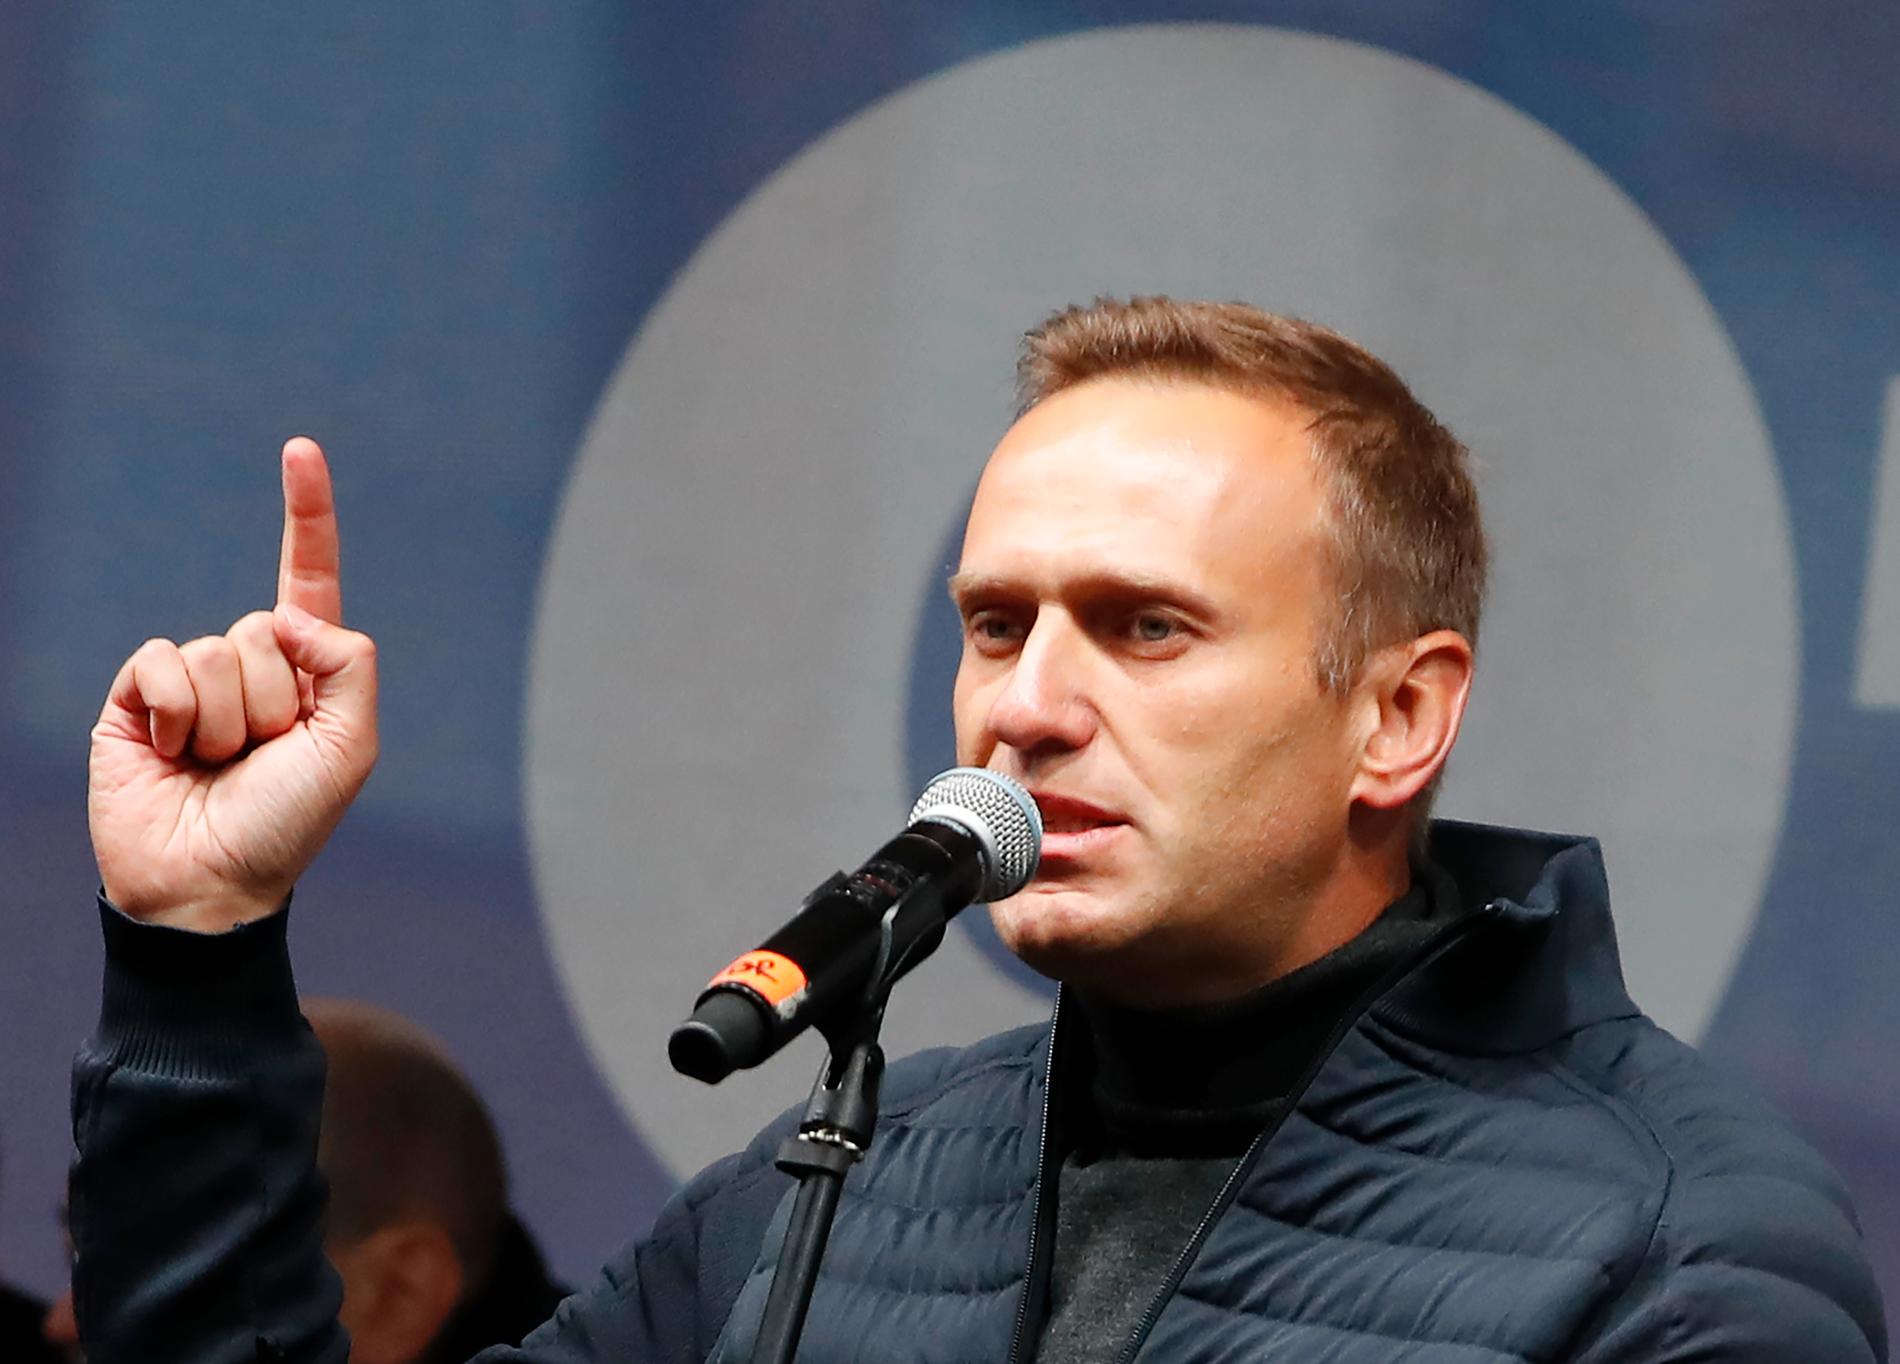 Ryske oppositionsledaren Aleksej Navalnyj döms att betala stort skadestånd för ärekränkning till ett ryskt bolag.Ägaren sägs stå president Vladimir Putin nära.